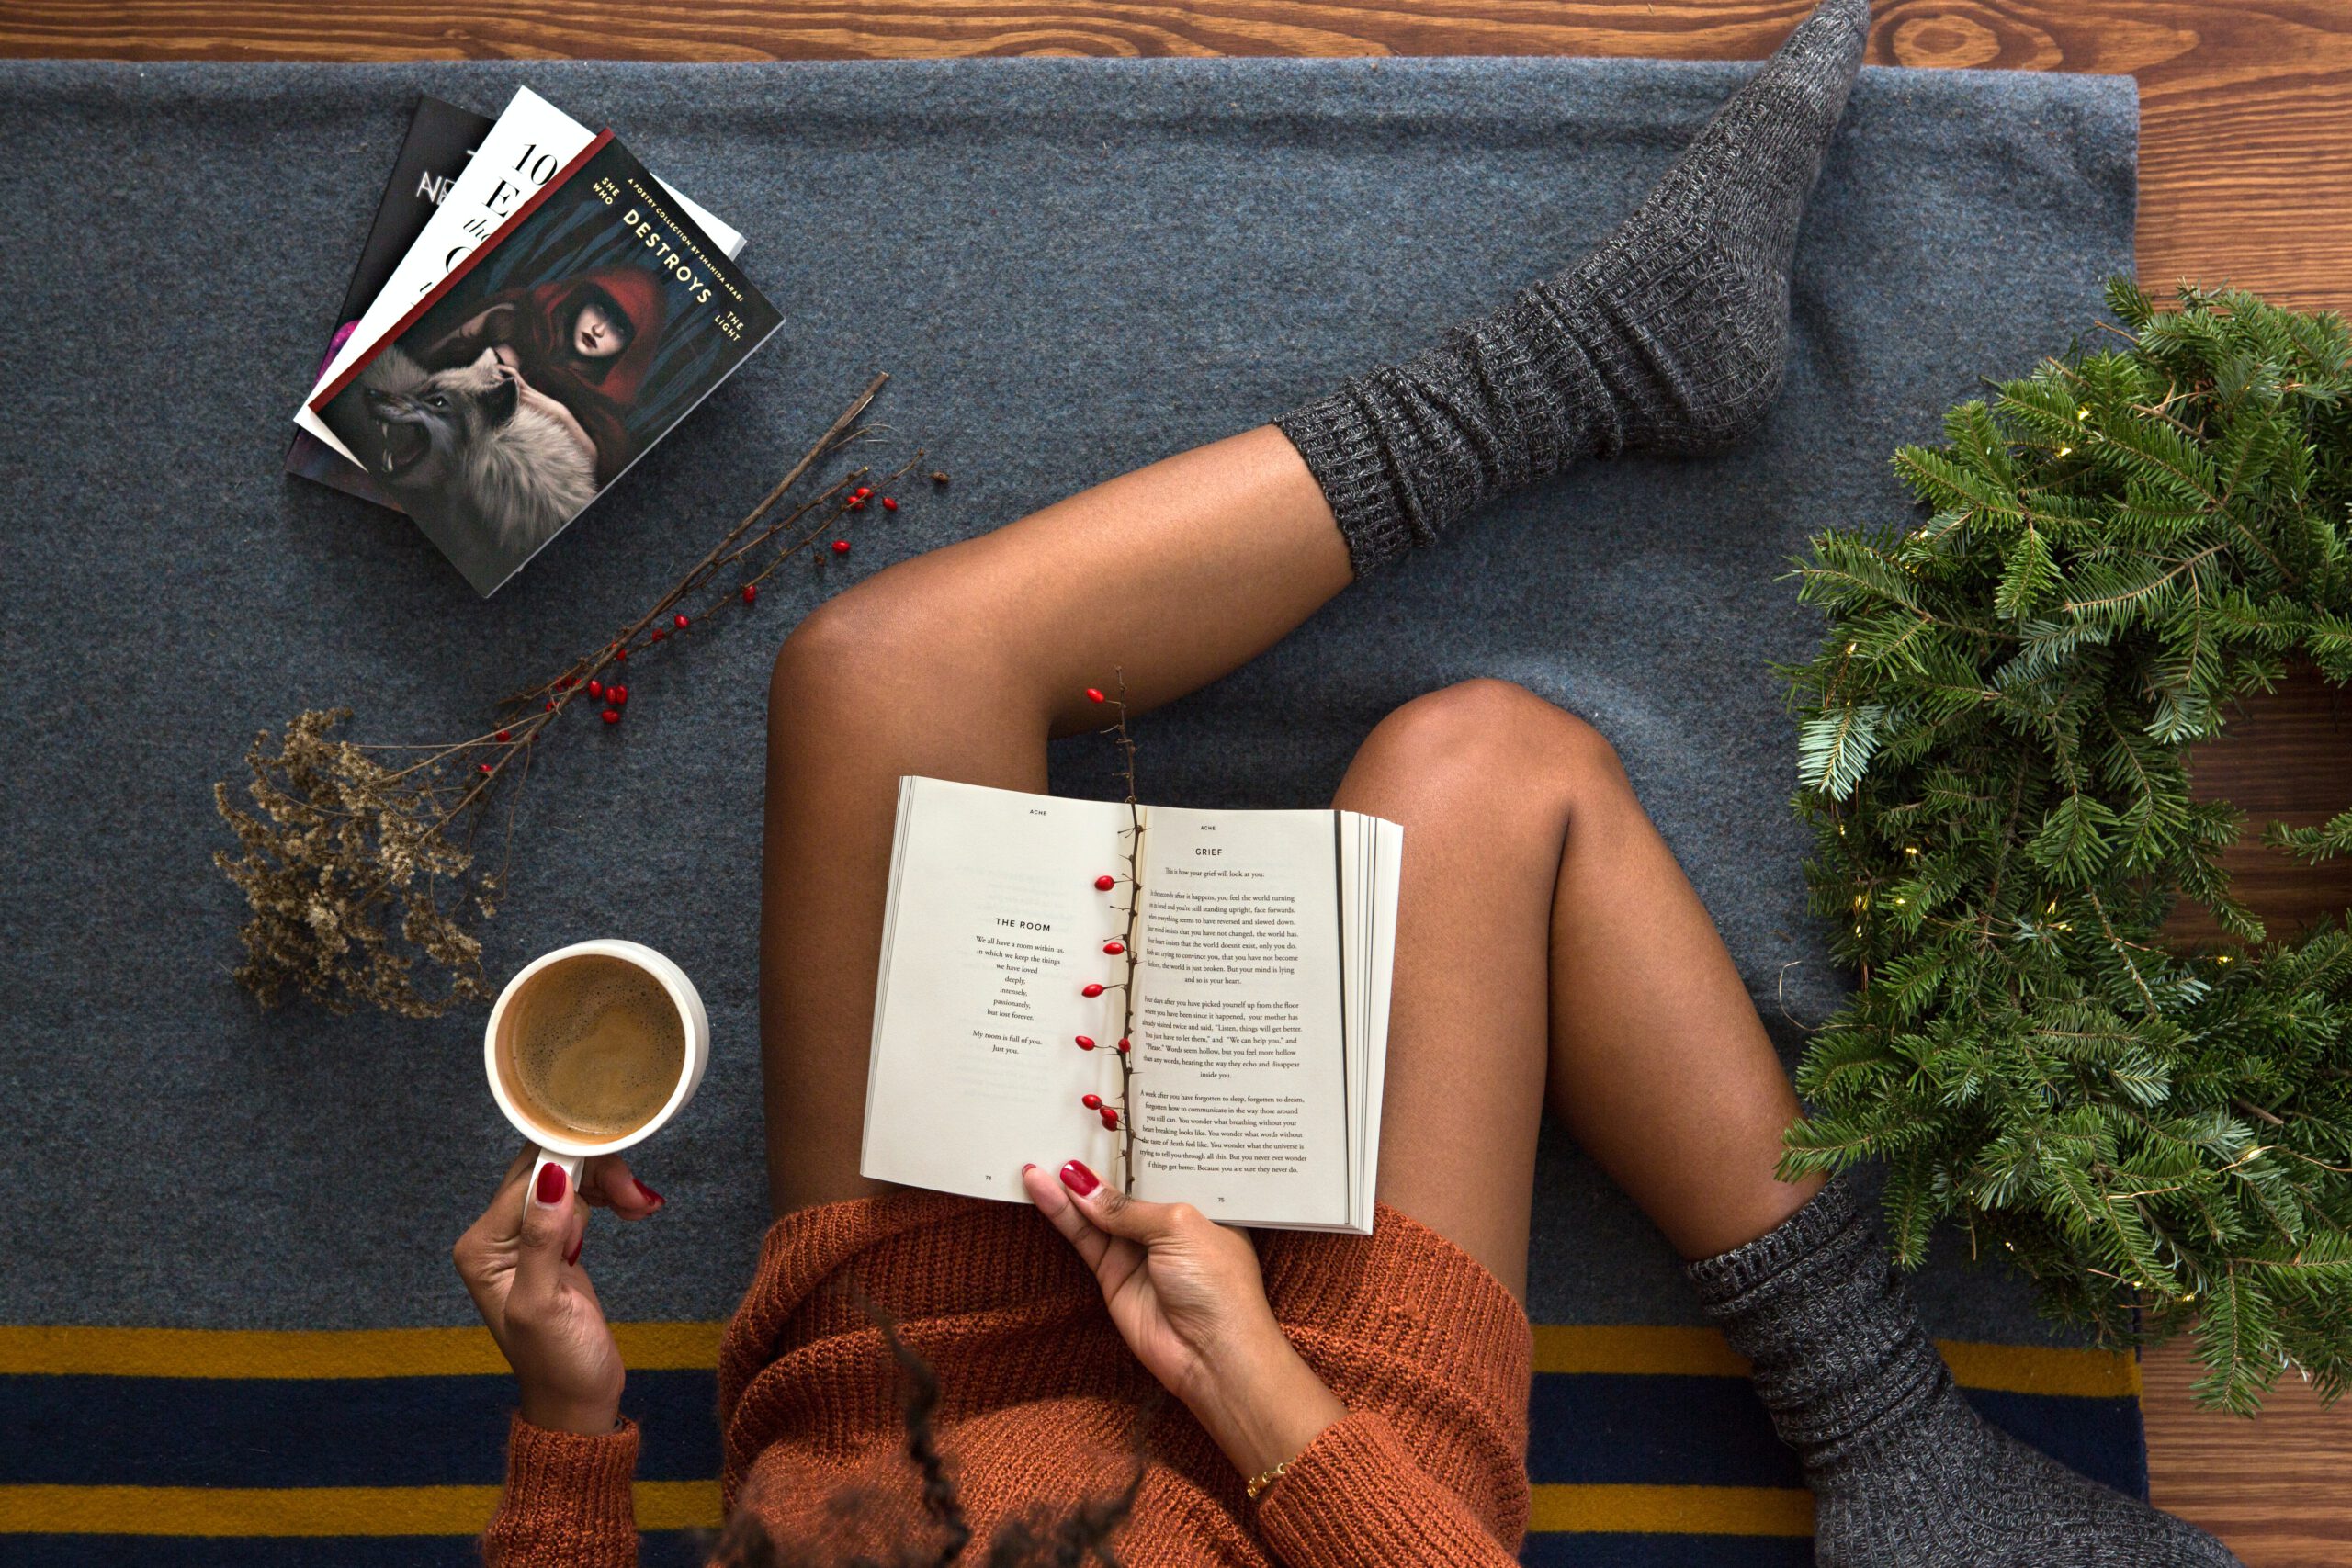 Eine Frau hält in der rechten Hand ein Buch und in der linken Hand eine Tasse Kaffee. Sie trägt dicke Socken, neben ihr liegen Bücher.